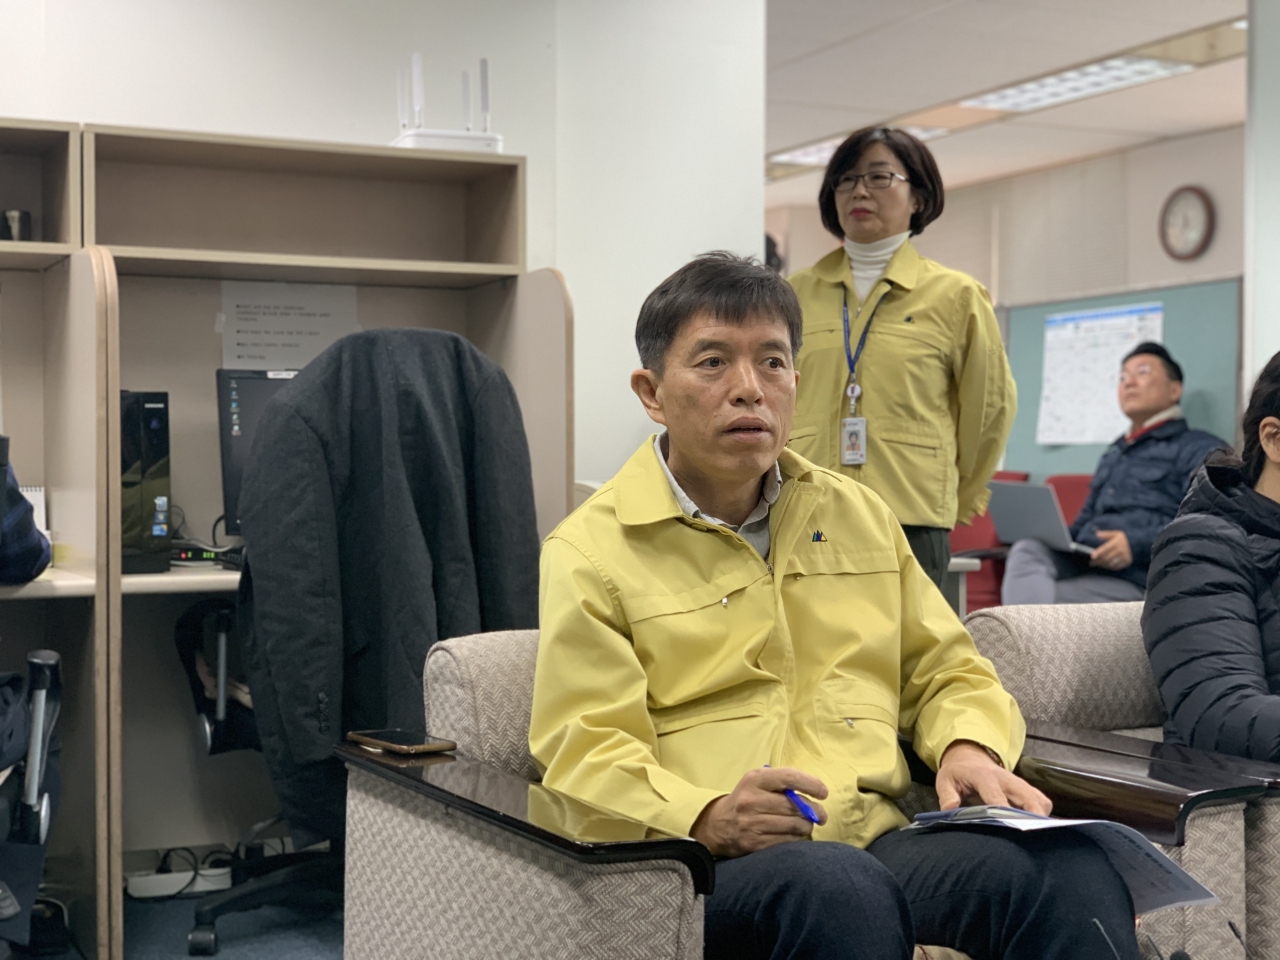 21일 대전시 이강혁 보건복지국장이 시청 기자실에서 브리핑을 열고 최근 대전에서 발생한 코로나19 확진자 두 명에 대해 설명하고 있다.